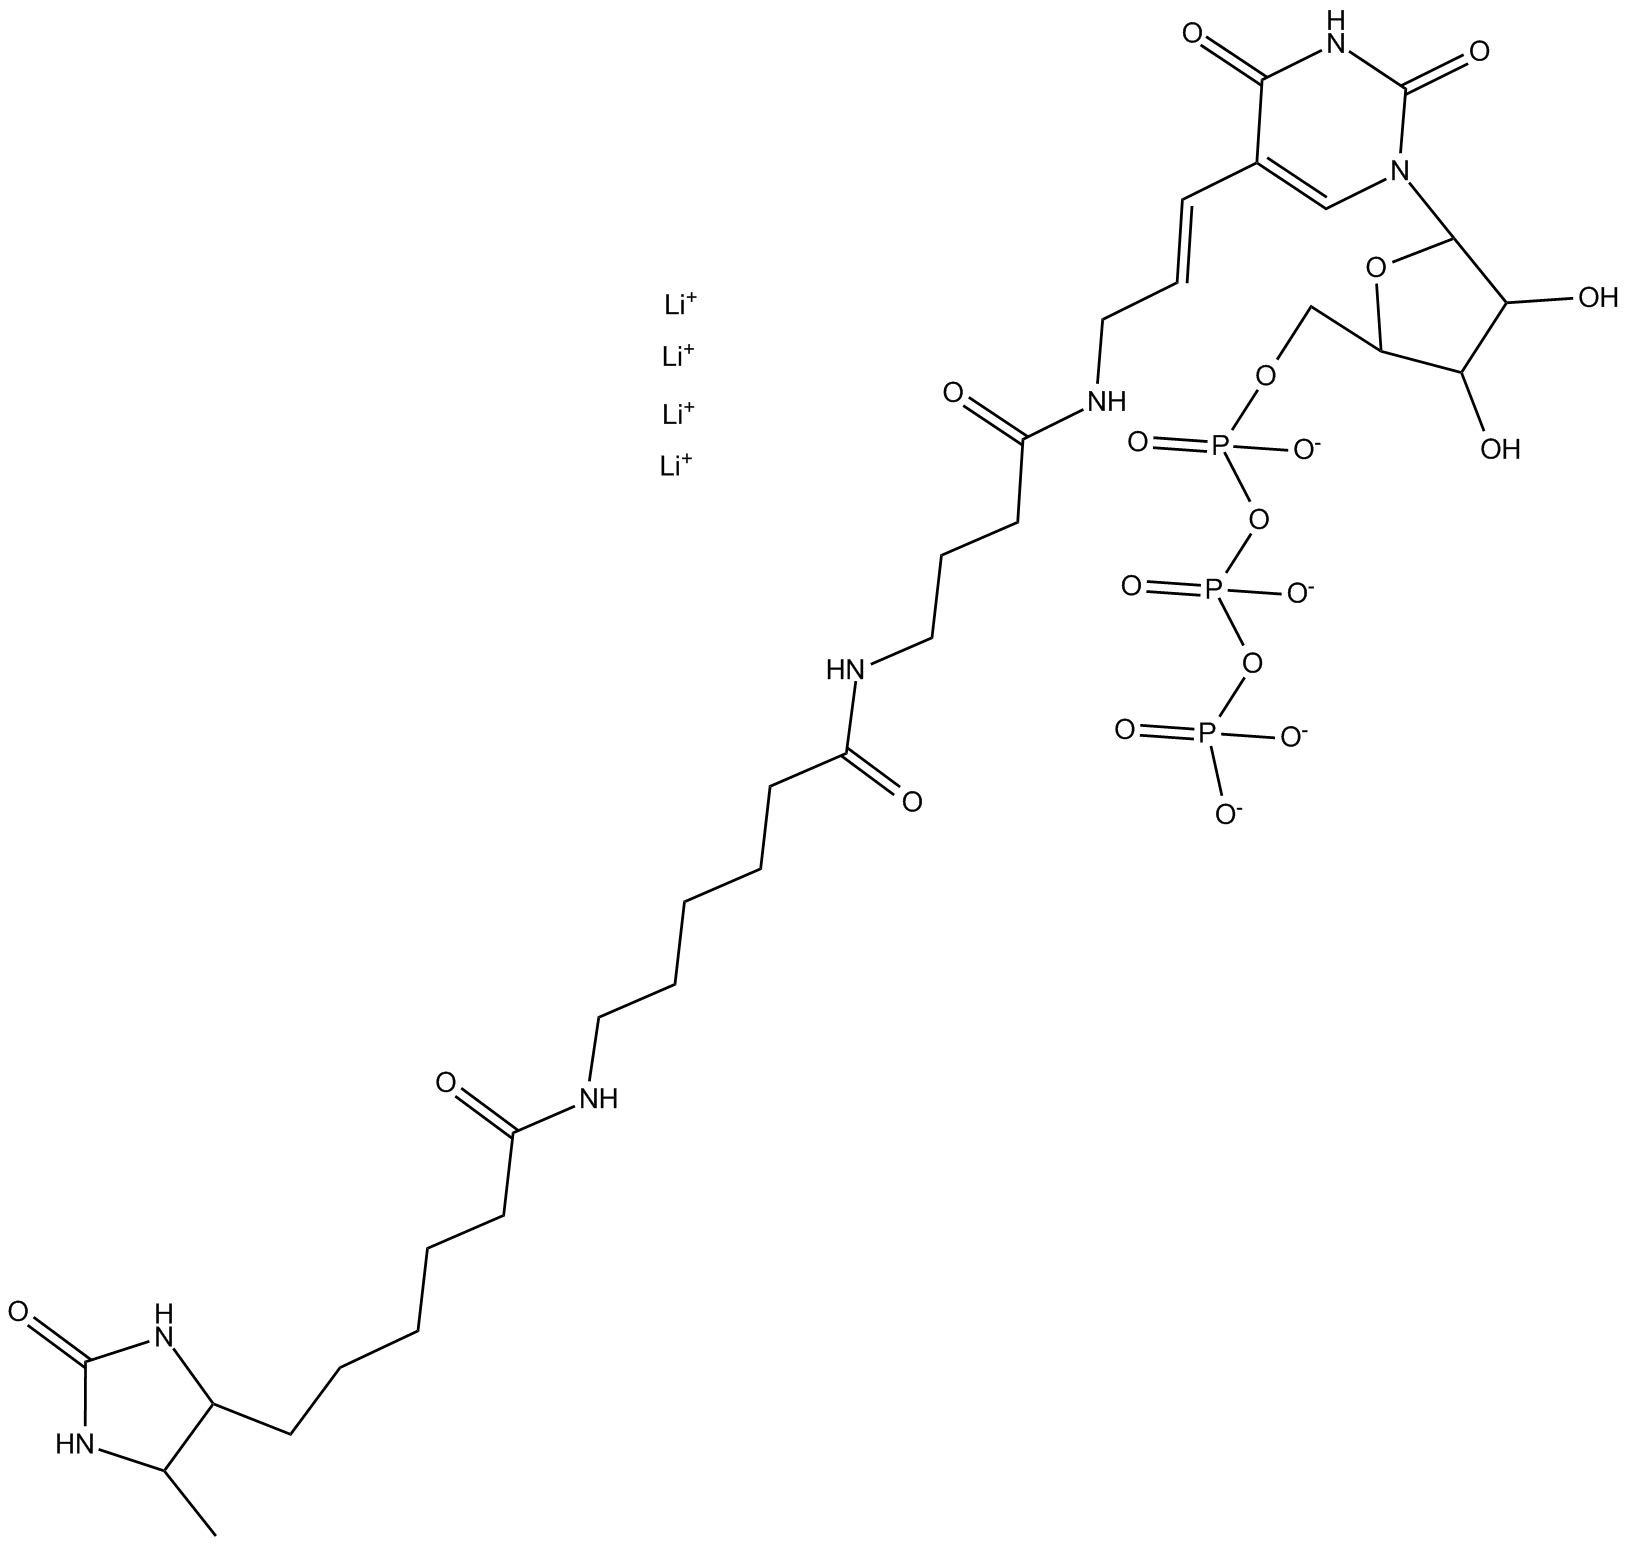 Desthiobiotin-16-UTP  Chemical Structure